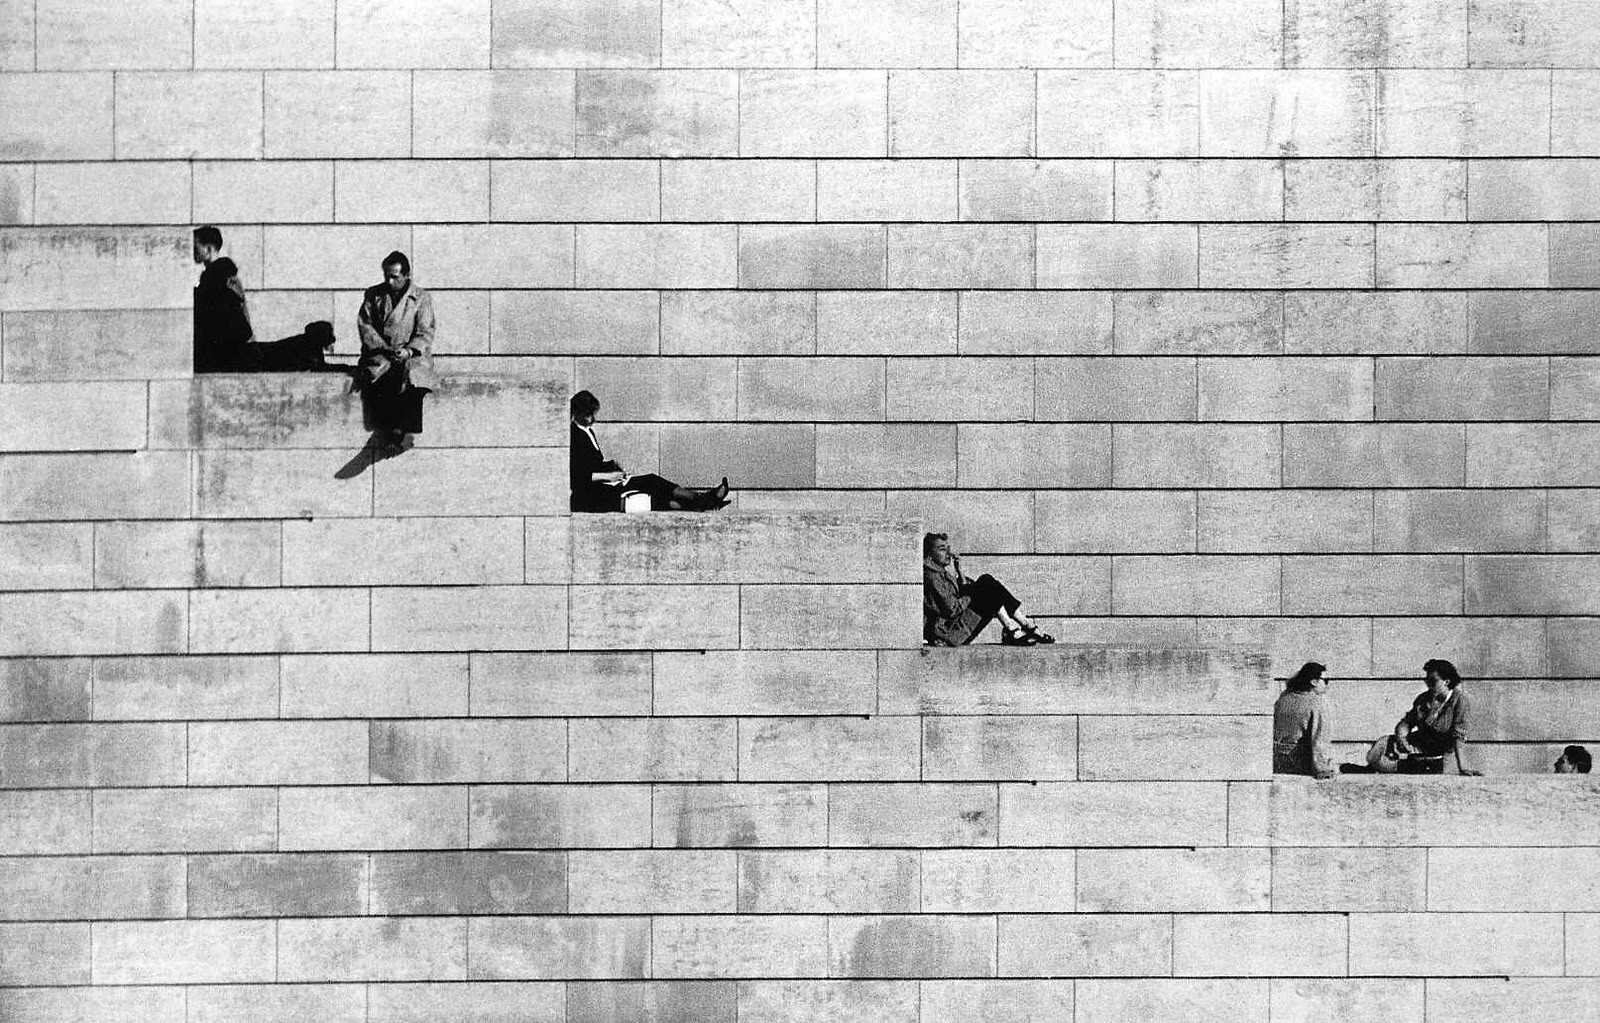 Диагональ, Париж, 1953. Фотограф Робер Дуано